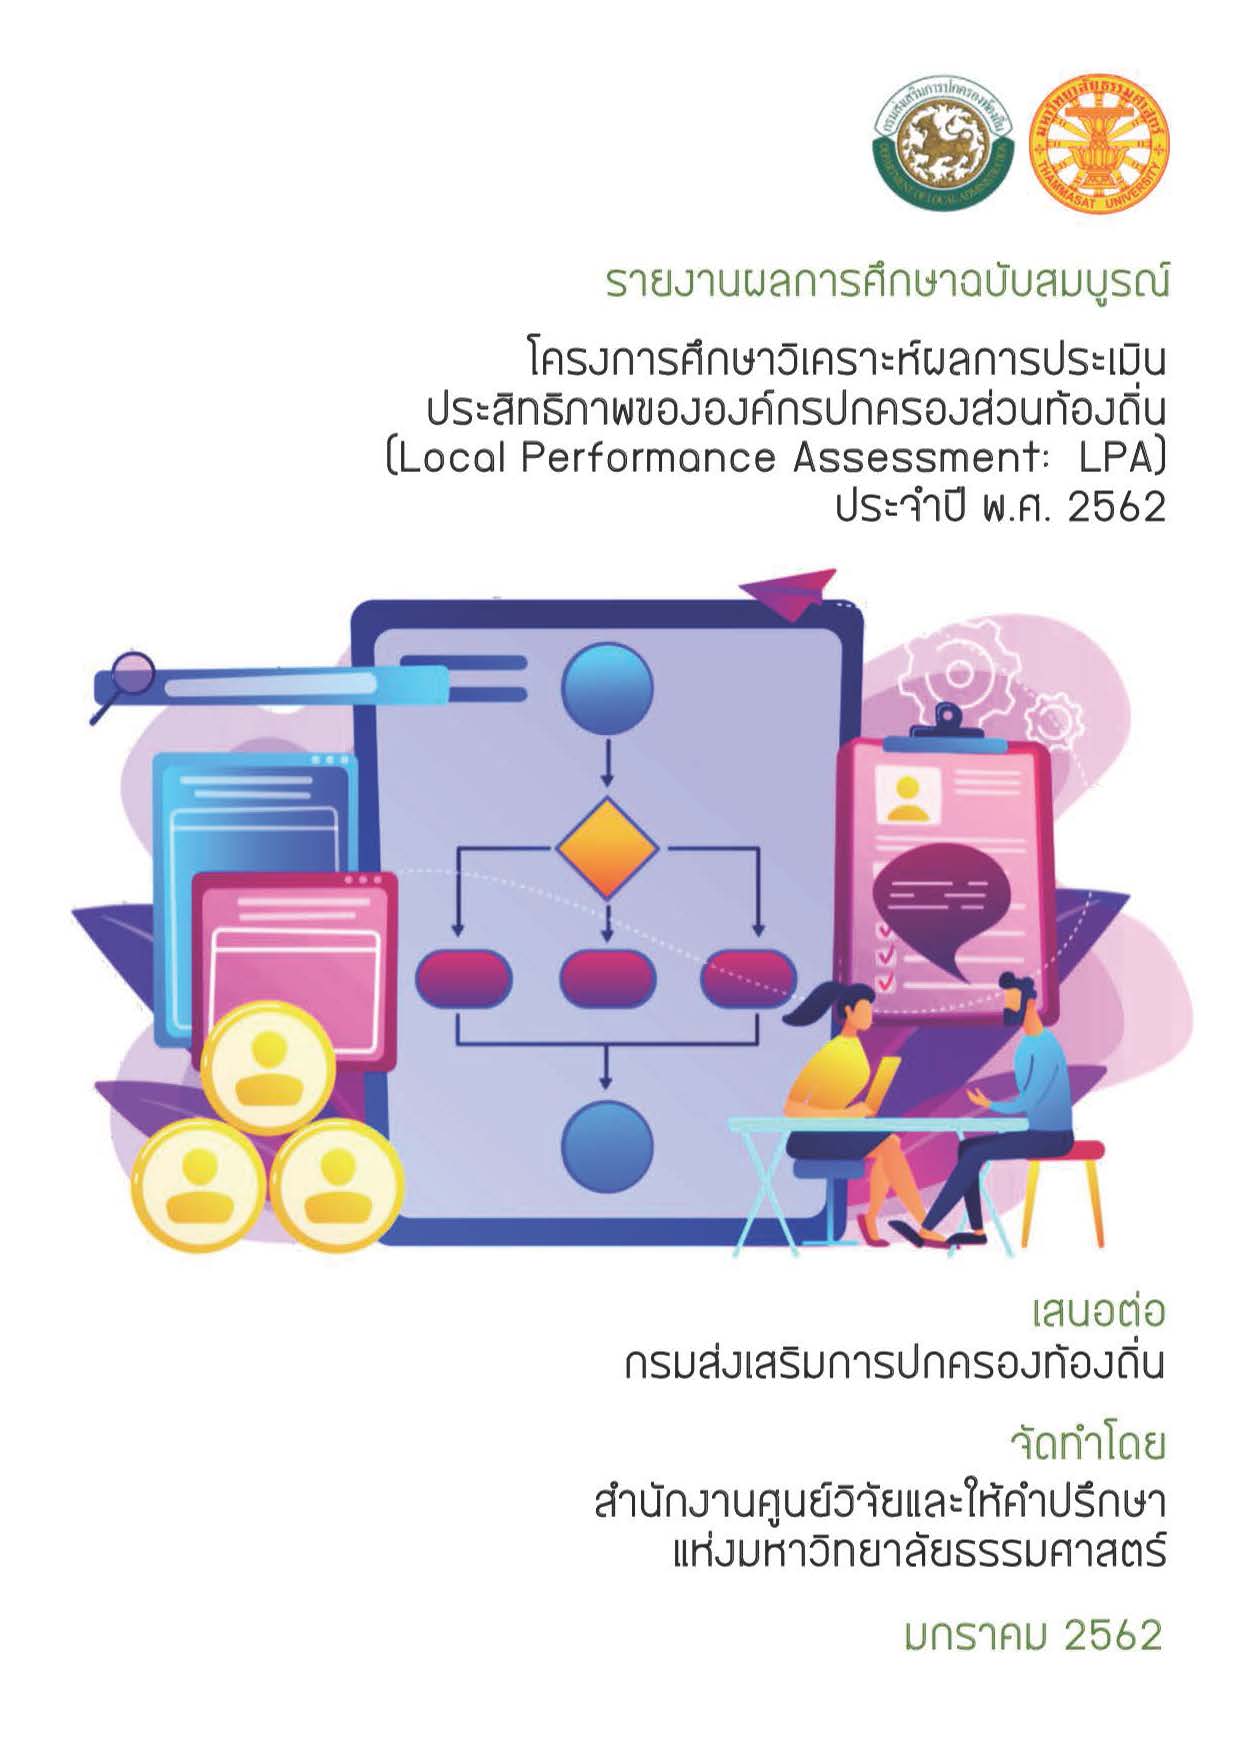 รายงานผลการศึกษาฉบับสมบูรณ์ โครงการศึกษาผลการประเมินประสิทธิภาพขององค์กรปกครองส่วนท้องถิ่น (Loacl Performance Assessment:LPA)  ประจำปี พ.ศ. 2562